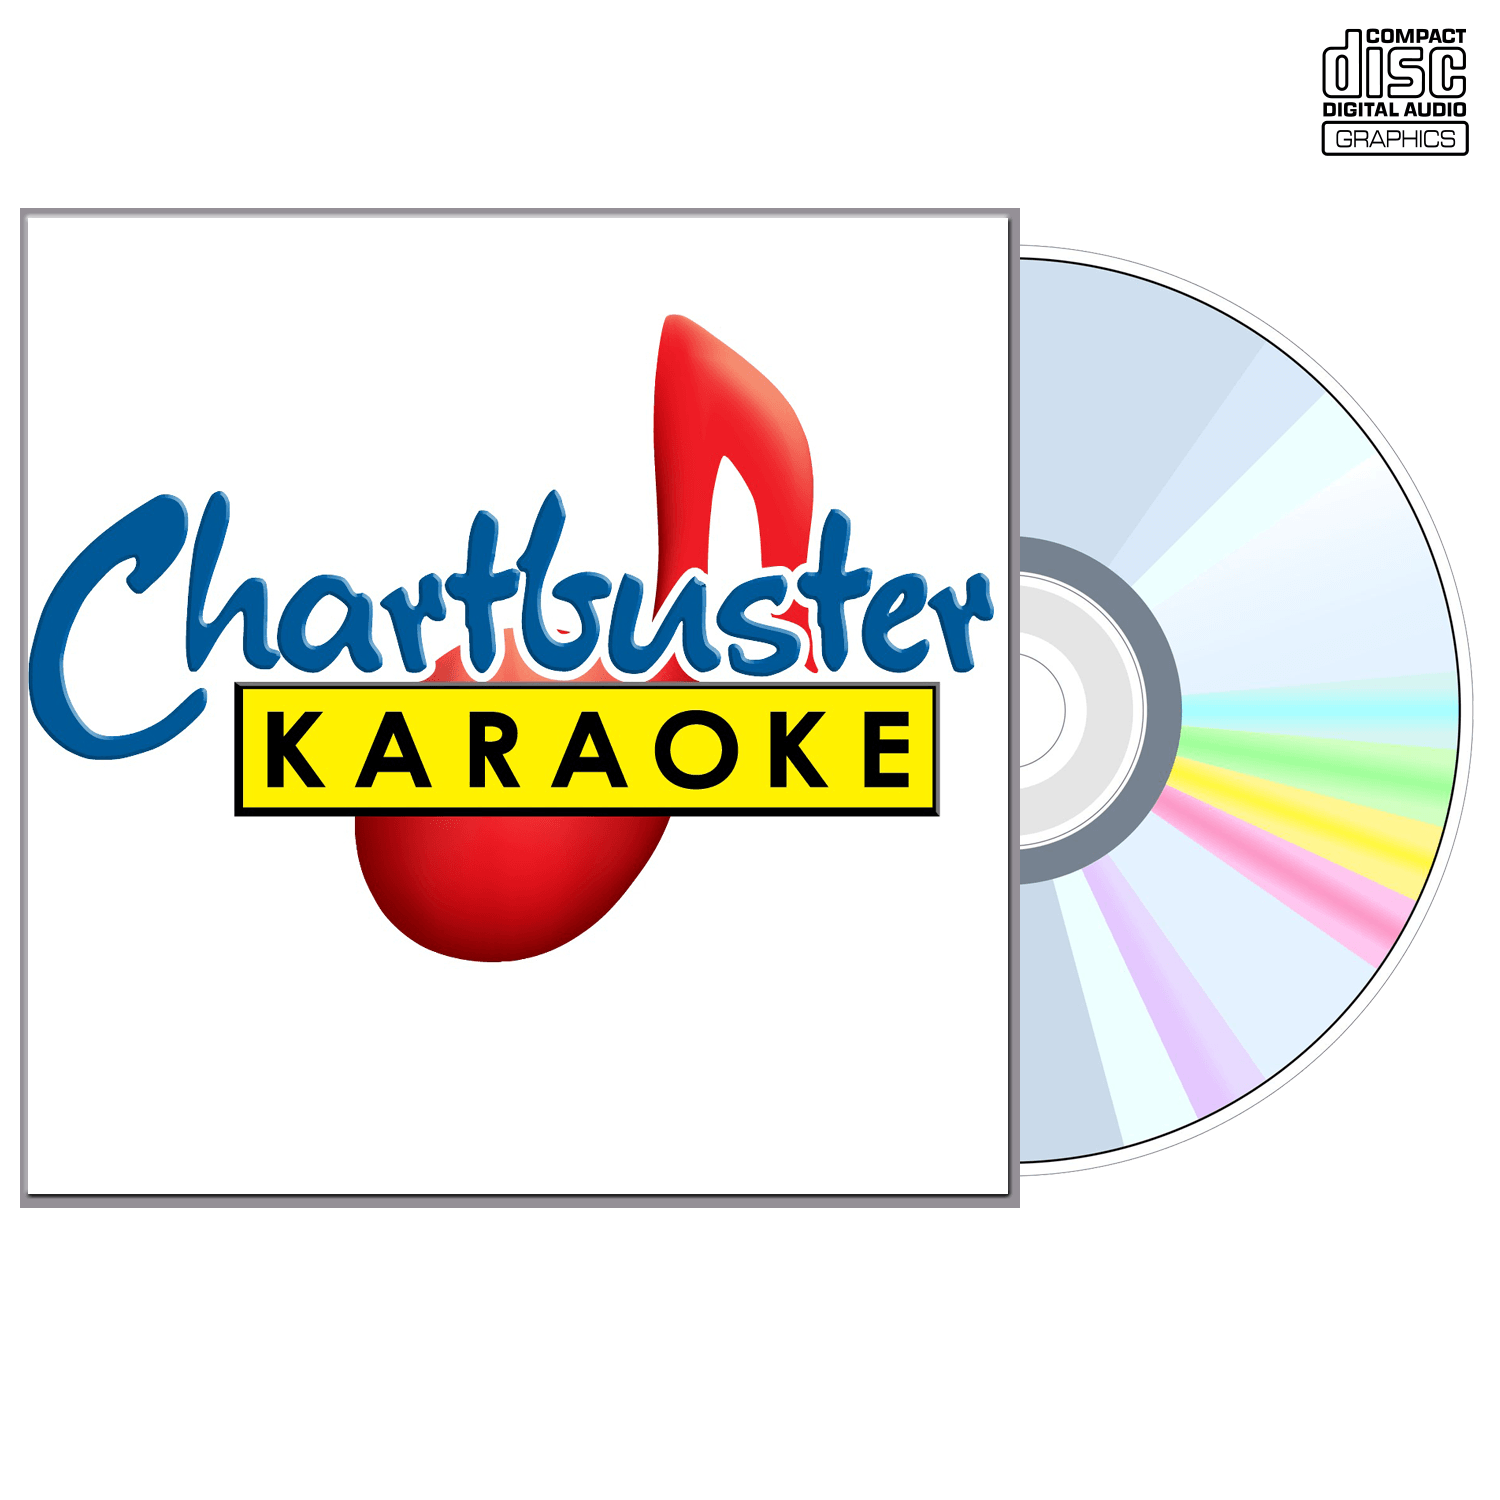 Van Zant - CD+G - Chartbuster Karaoke - Karaoke Home Entertainment